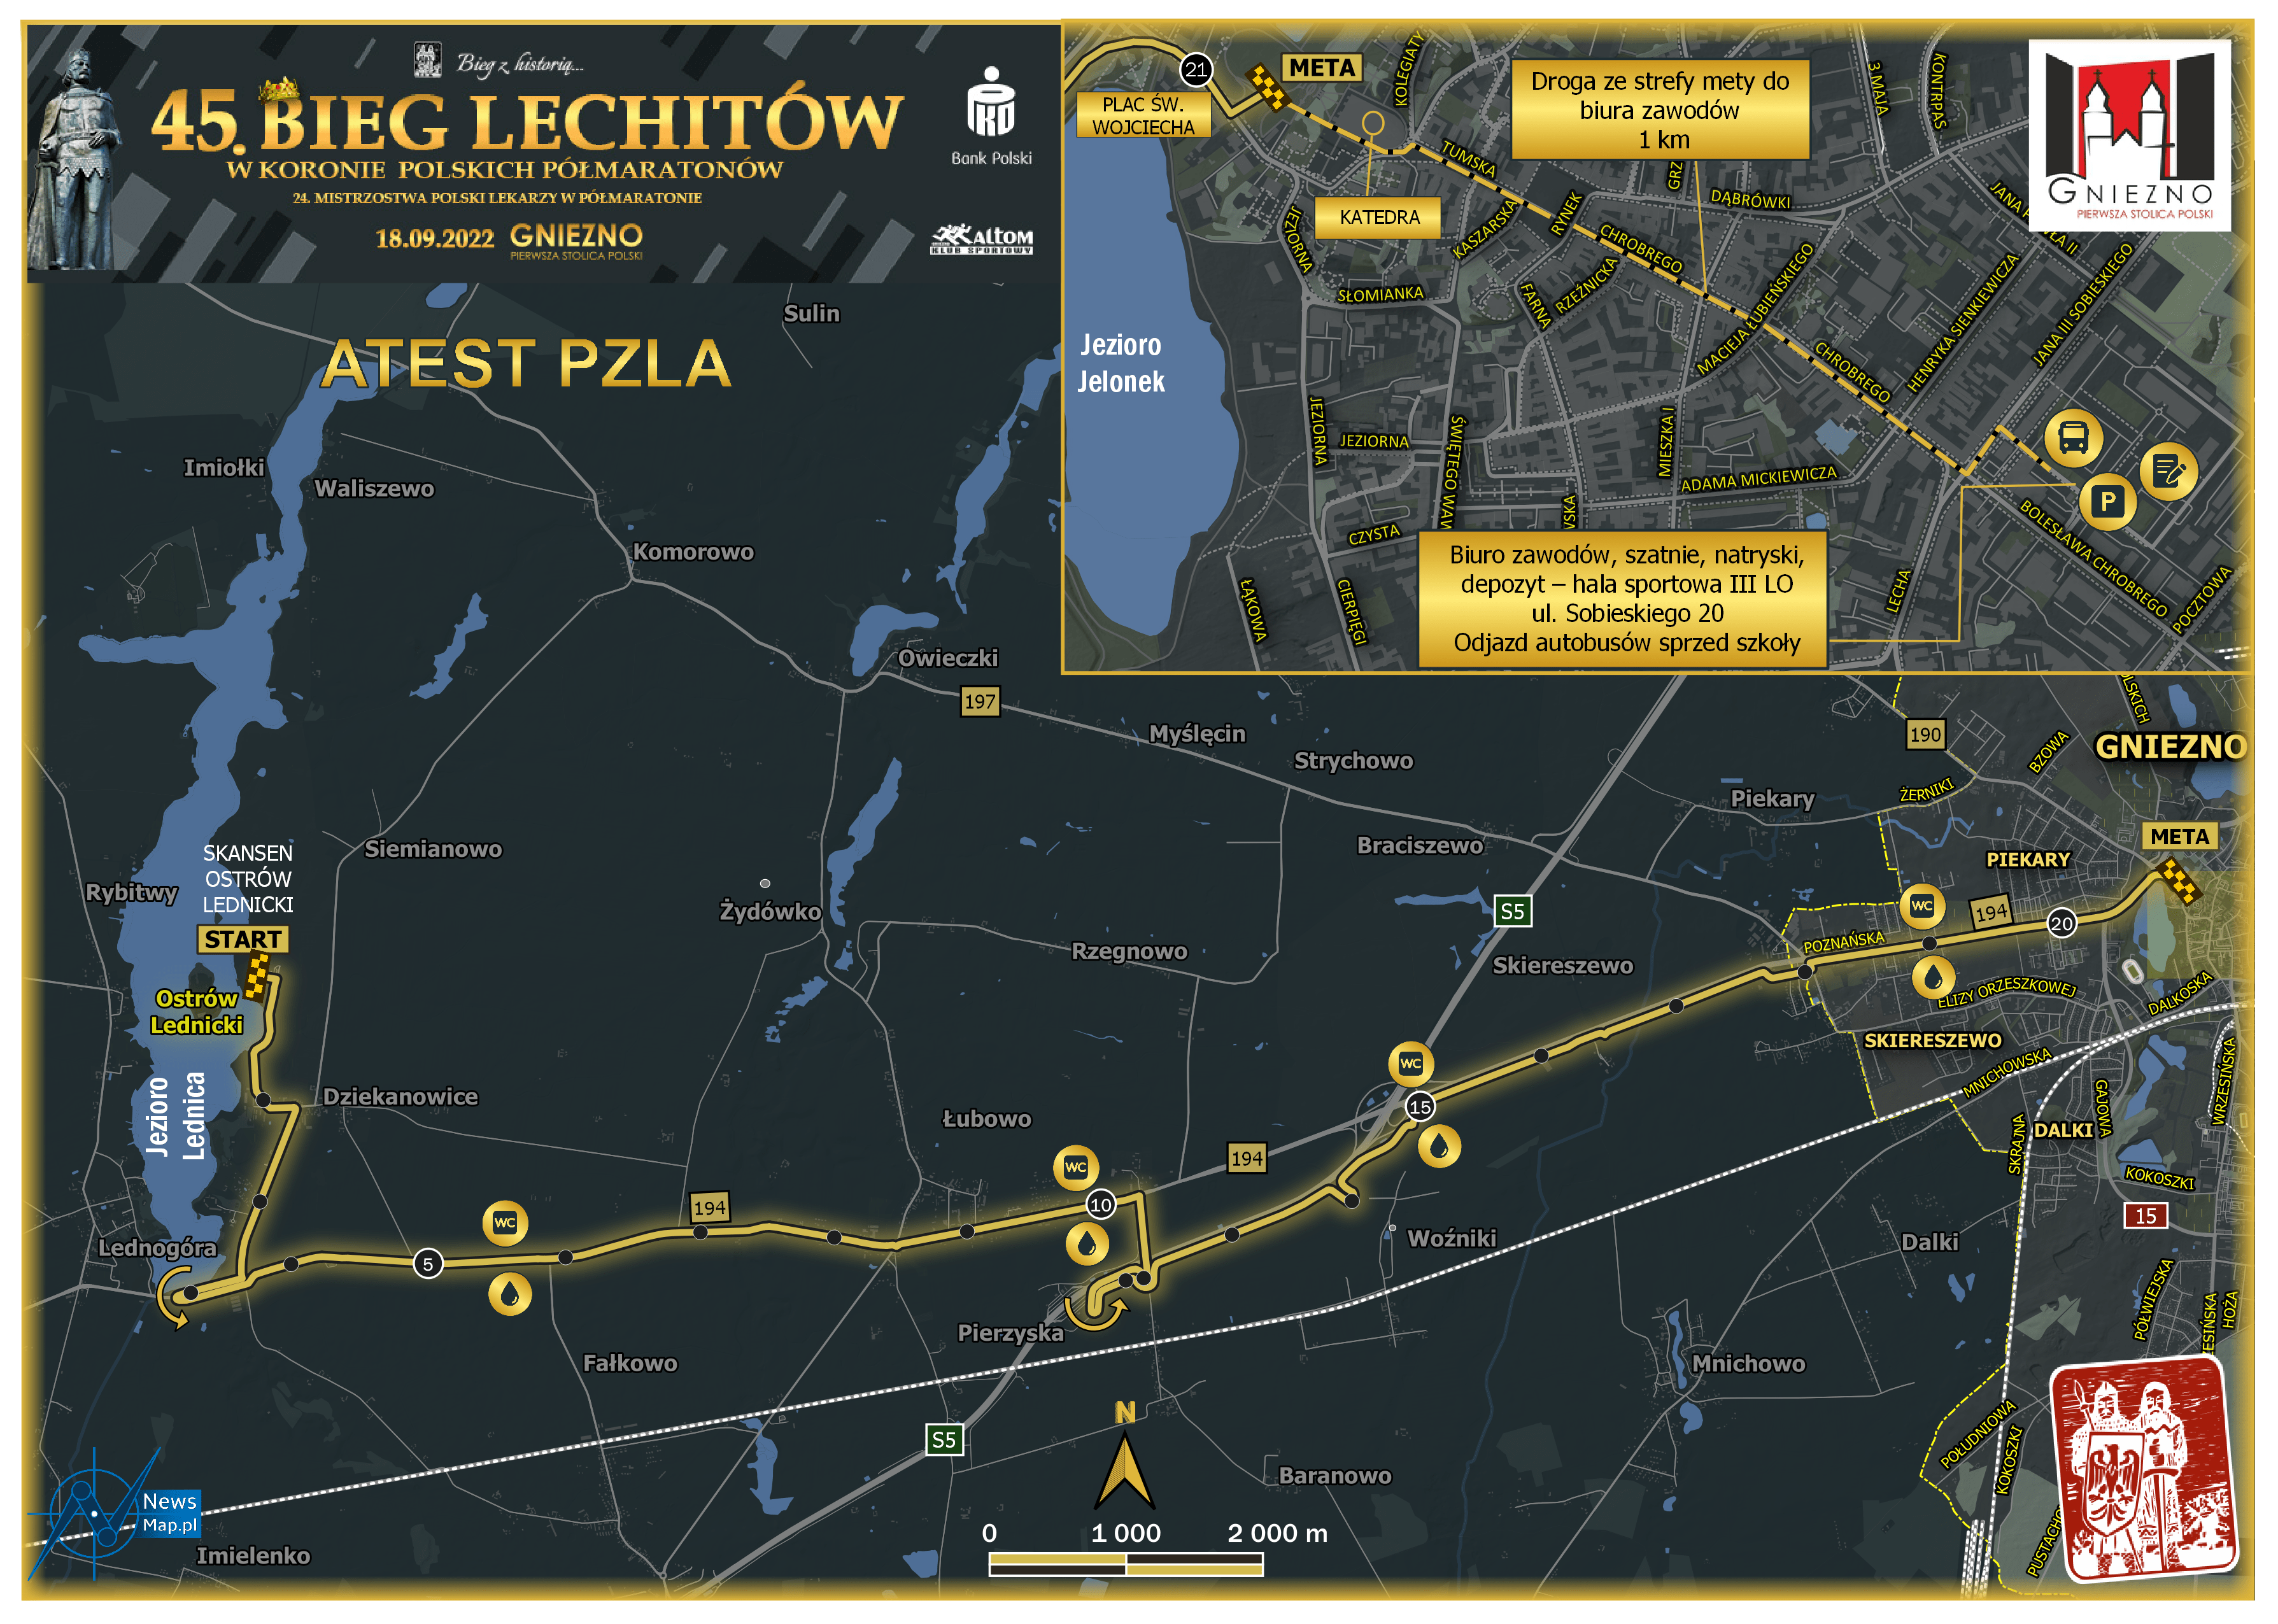 Mapa statyczna Bieg Lechitów 2022 - zmiana trasy (on-line)v2